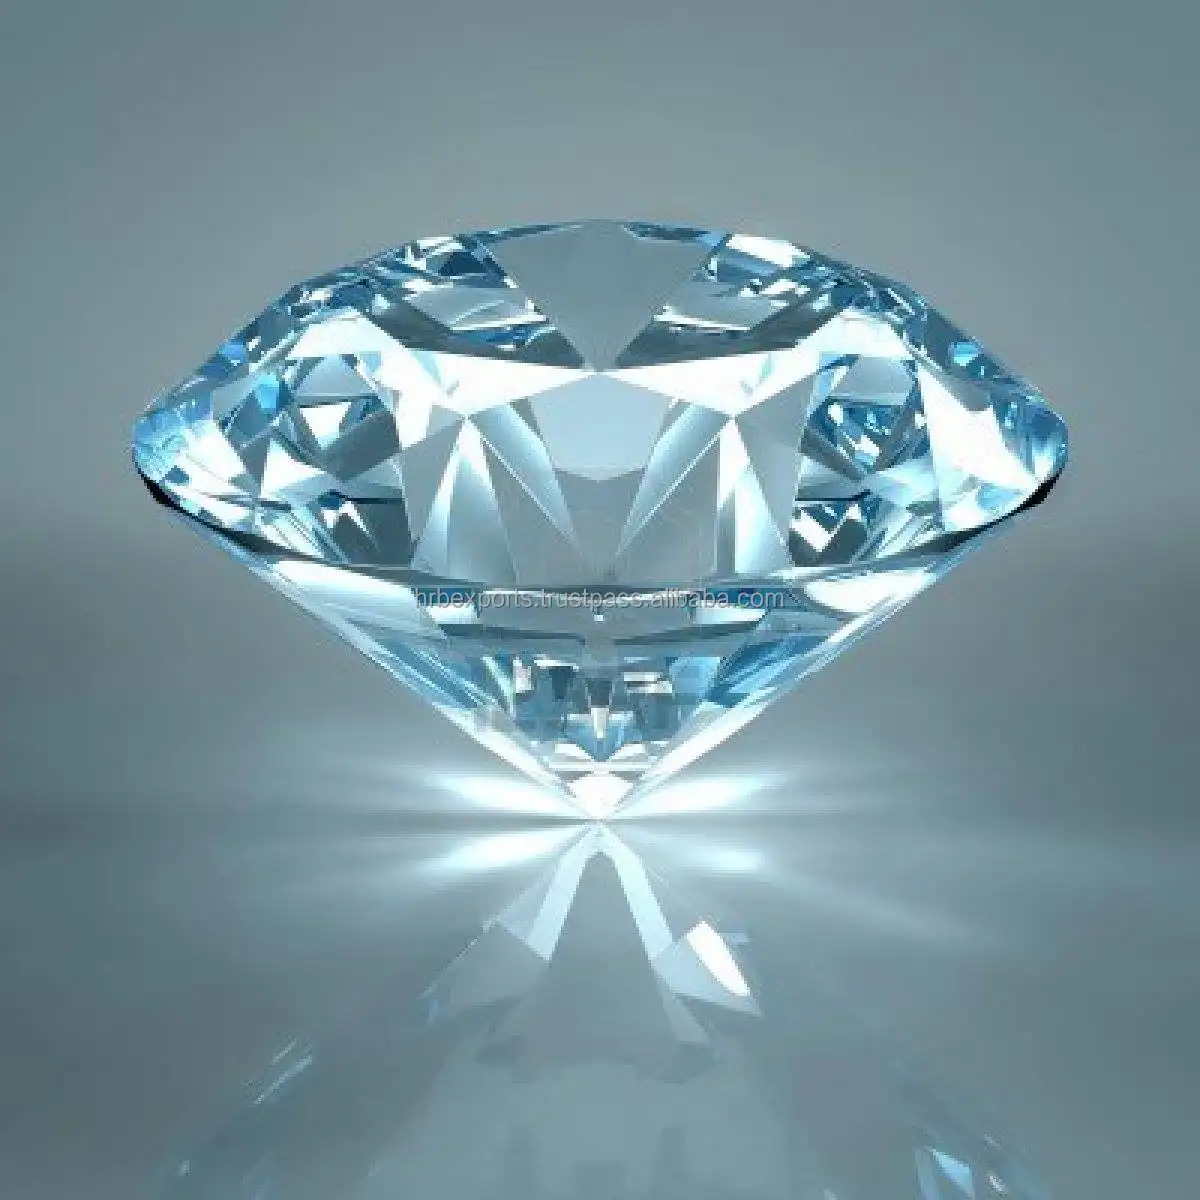 レア10-15カラット、D-Eカラー、VVSクラリティラウンドブリリアントカットGIA認定ナチュラルダイヤモンドでダイヤモンドジュエリーを作ります。